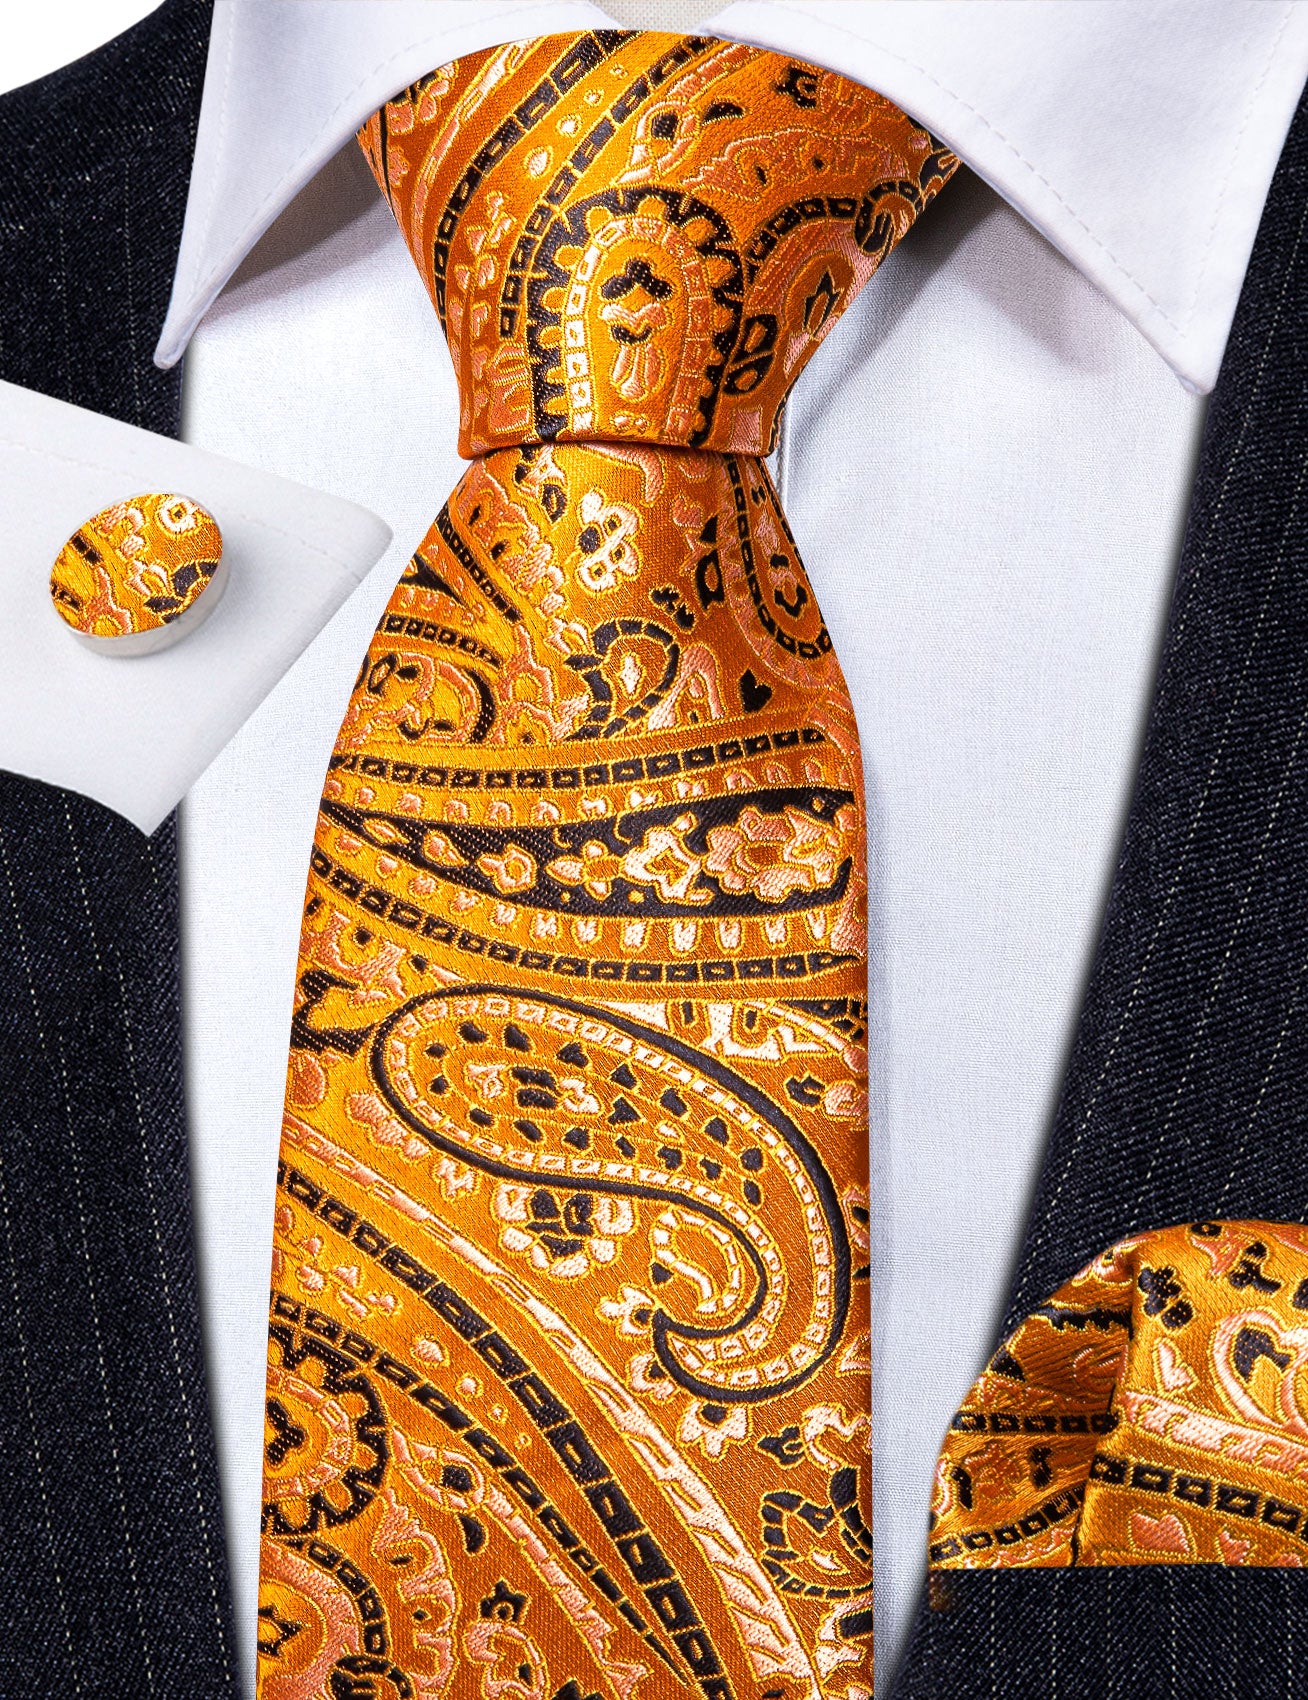 Fashion Gold Orange Paisley Silk Tie Handkerchief Cufflinks Set